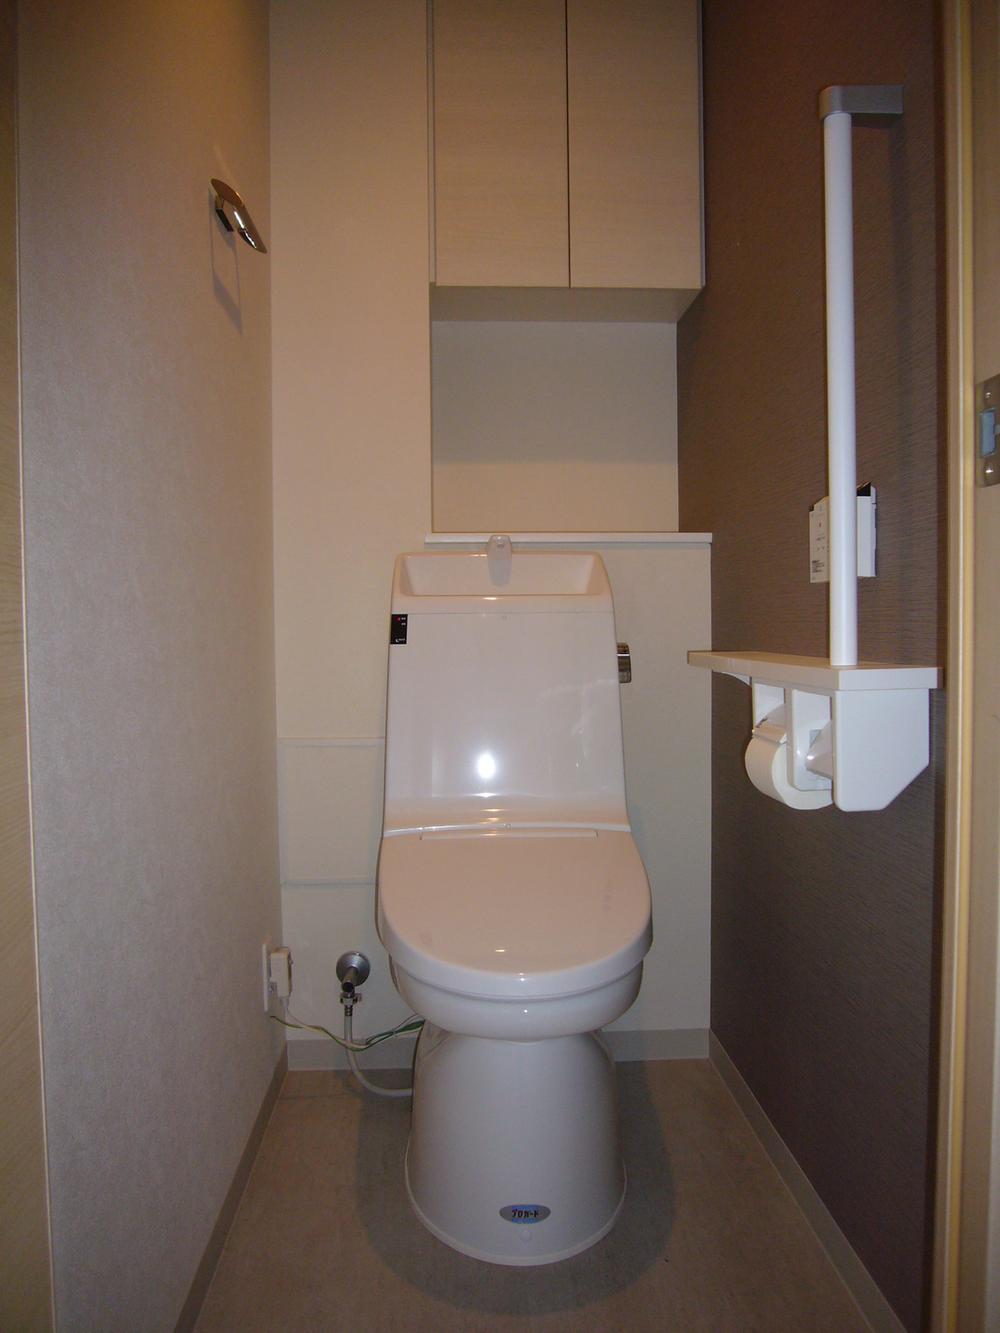 Toilet. Toilet of warm water washing toilet seat